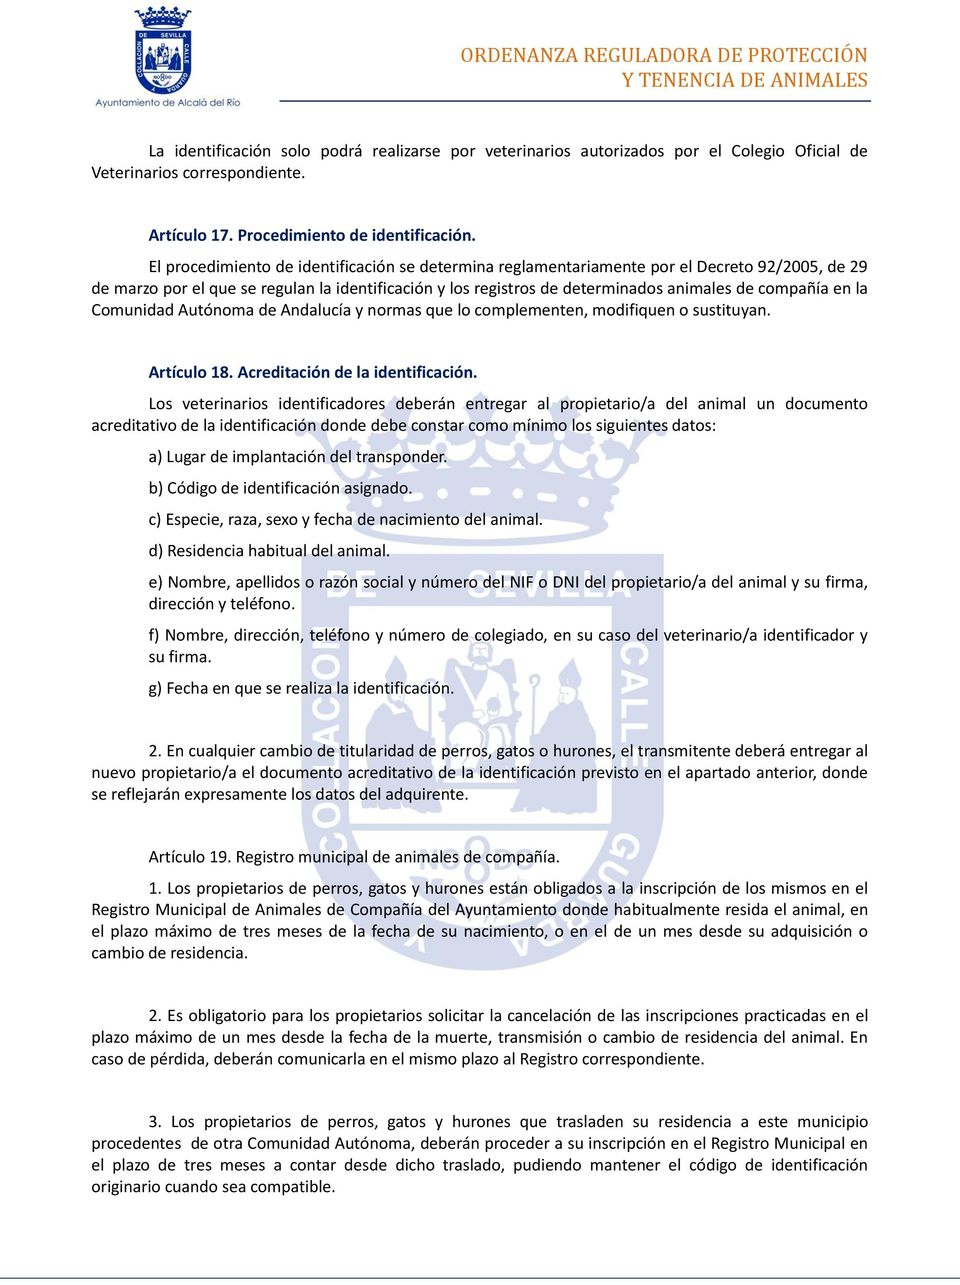 en la Comunidad Autónoma de Andalucía y normas que lo complementen, modifiquen o sustituyan. Artículo 18. Acreditación de la identificación.